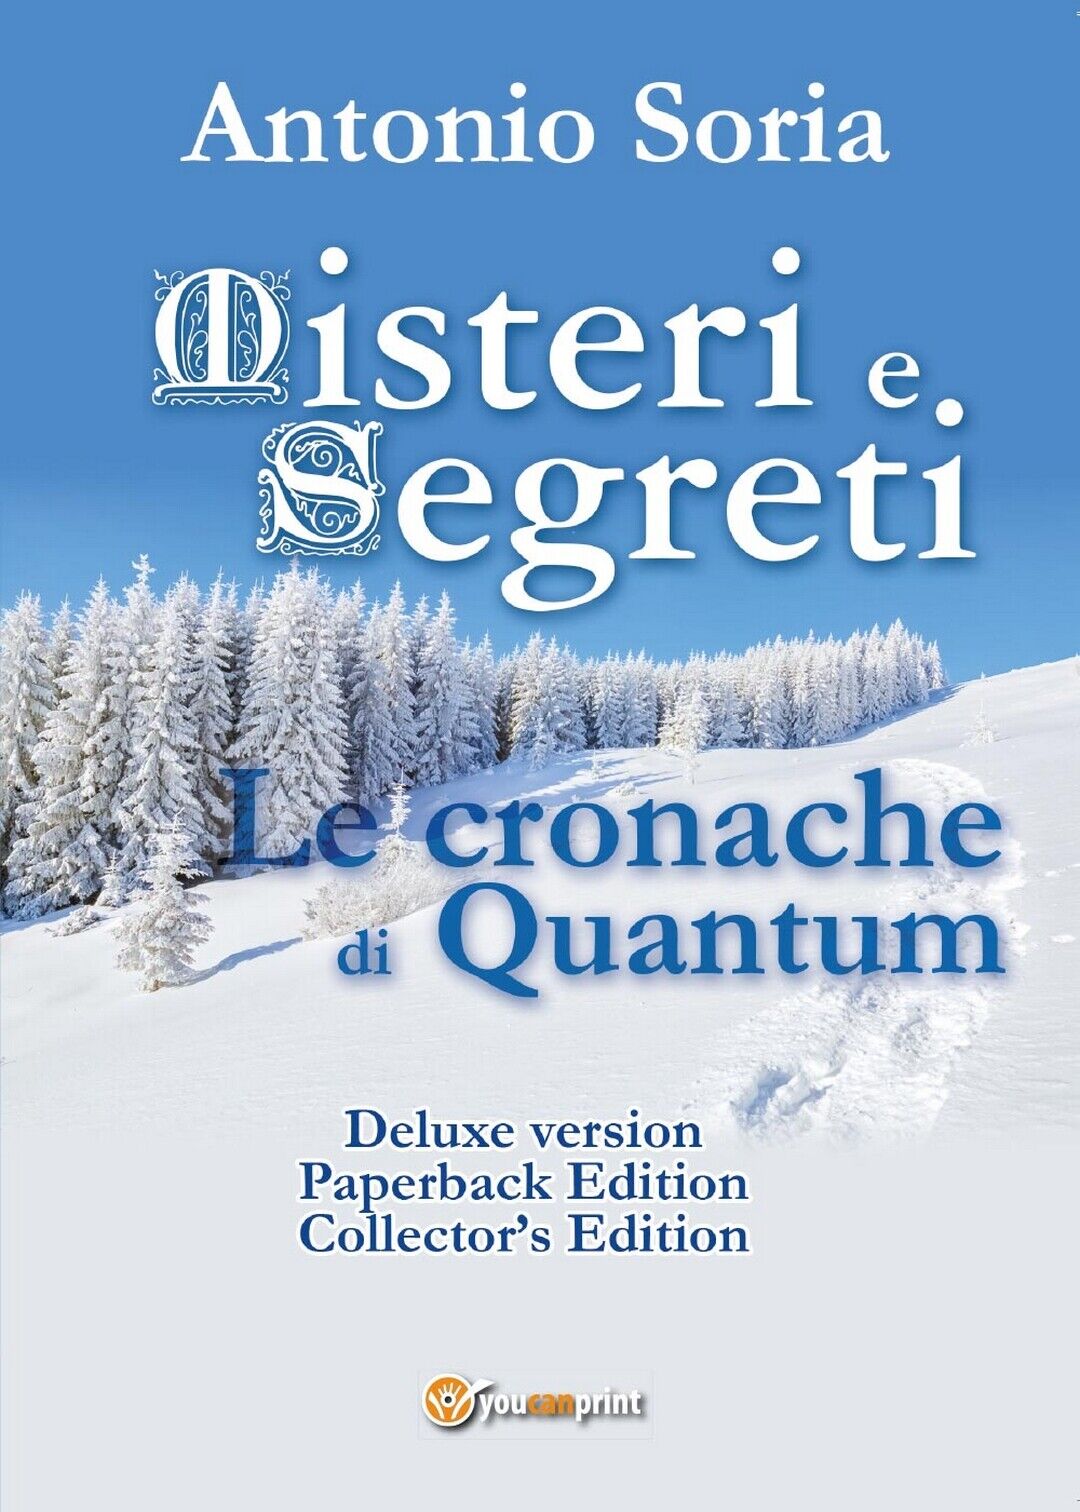 Misteri e Segreti. Le cronache di Quantum (Deluxe version) Paperback Edition libro usato